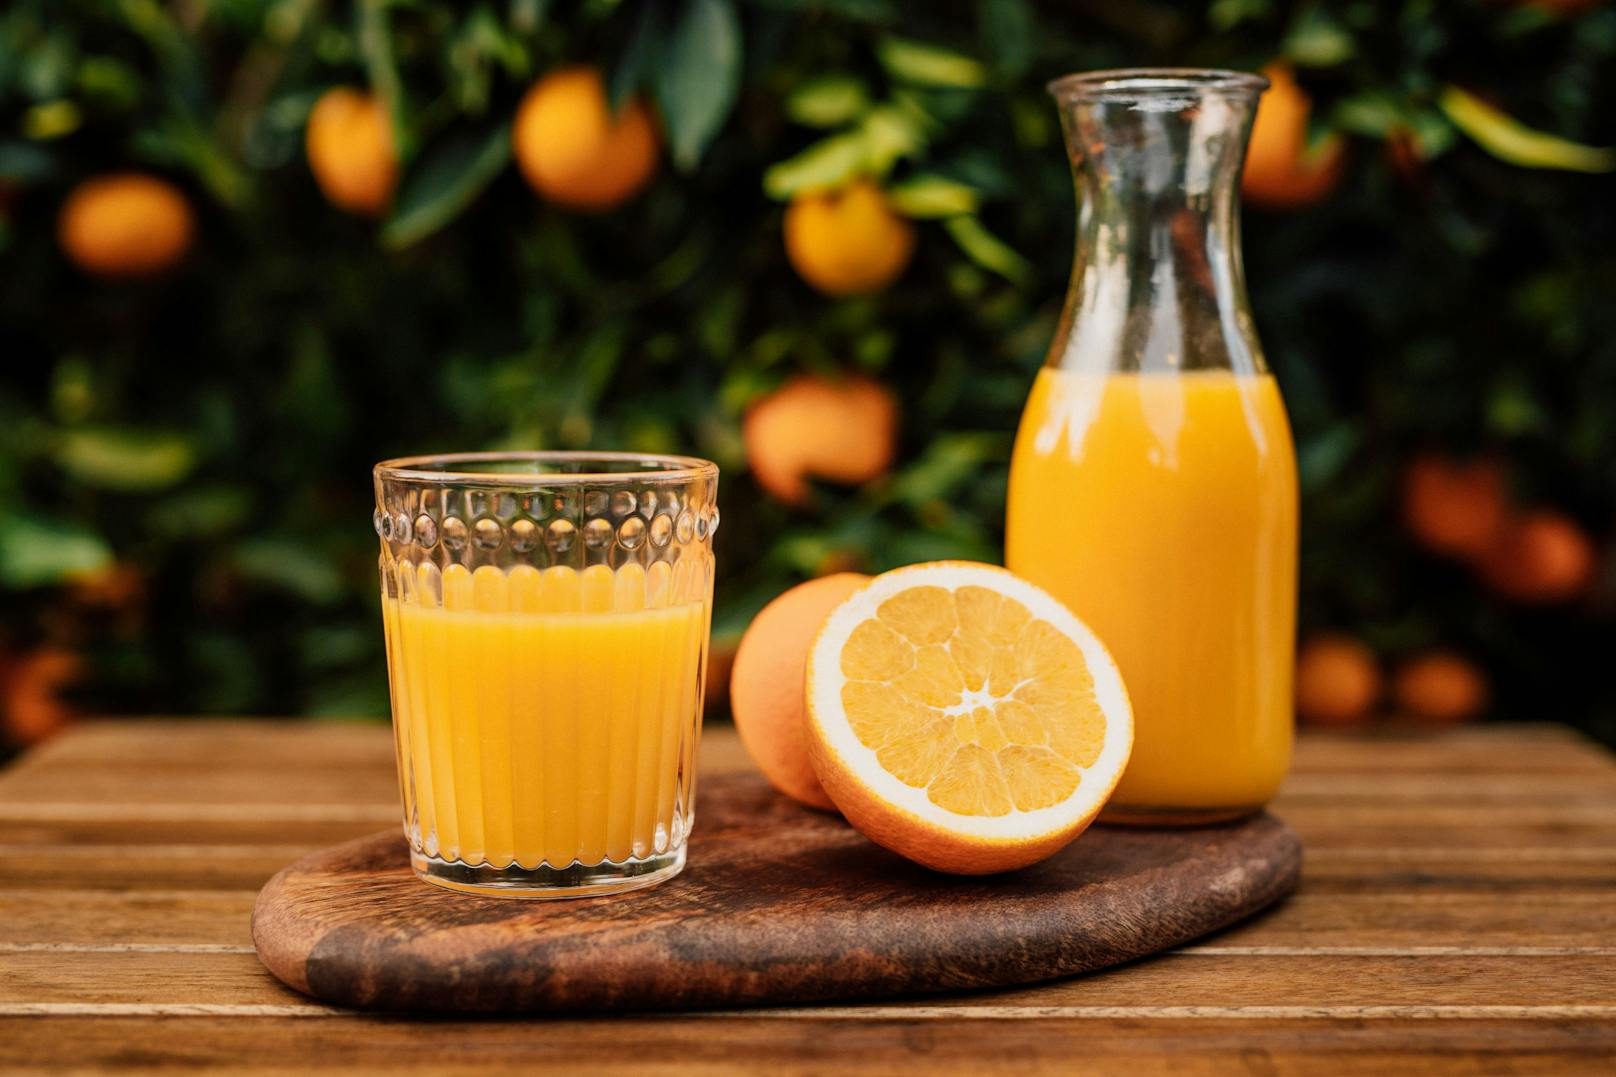 Schlechte Ernte – Orangensaft so knapp wie lange nicht